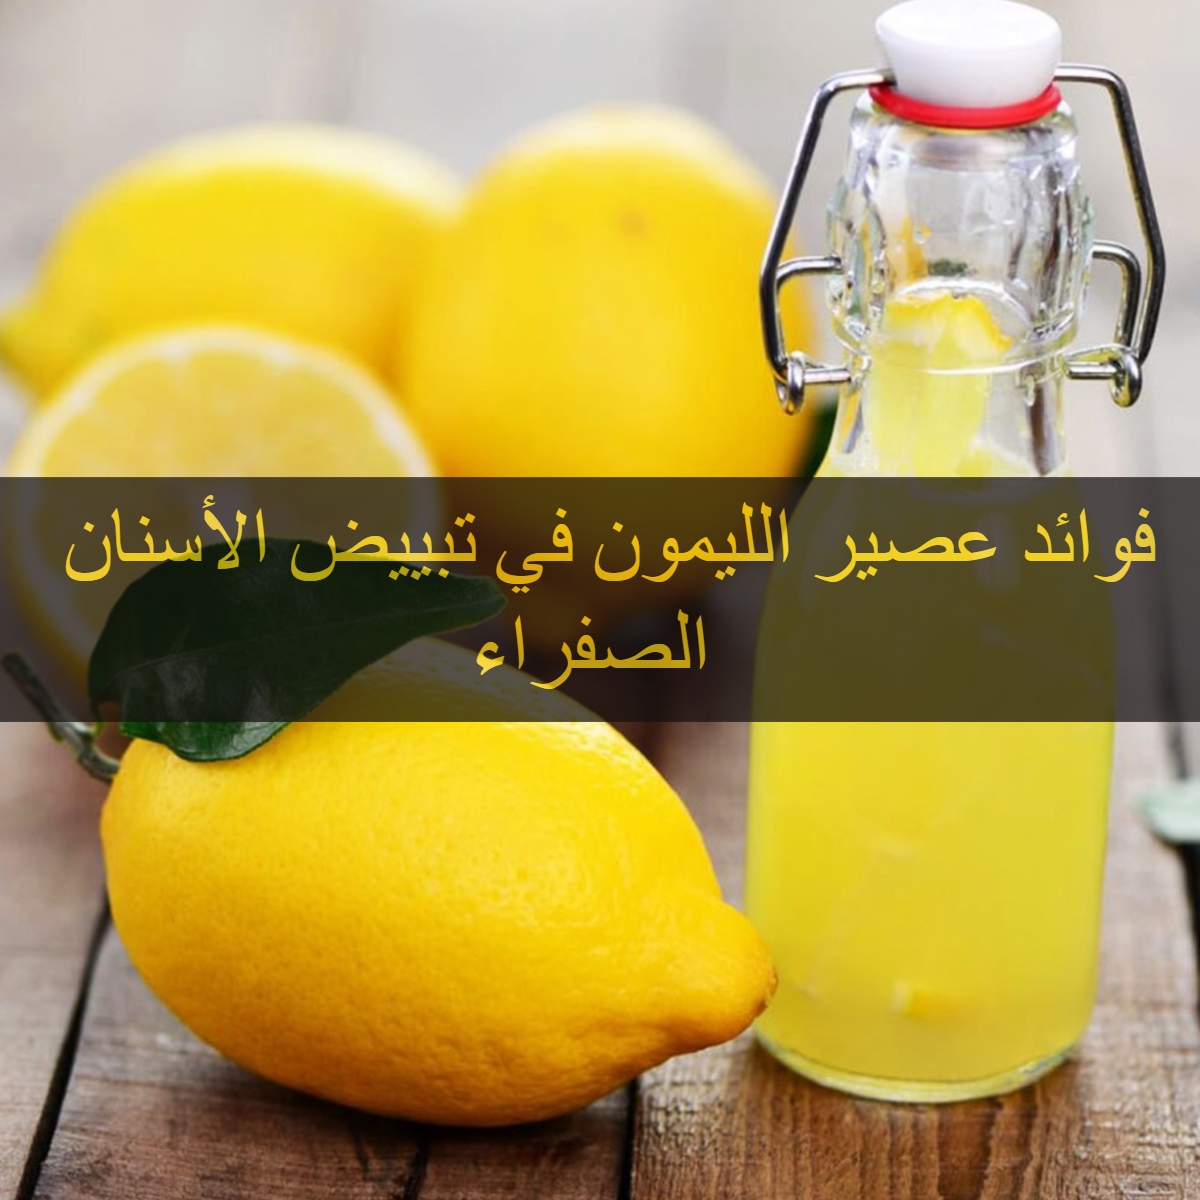 فوائد عصير الليمون في تبييض الأسنان الصفراء 